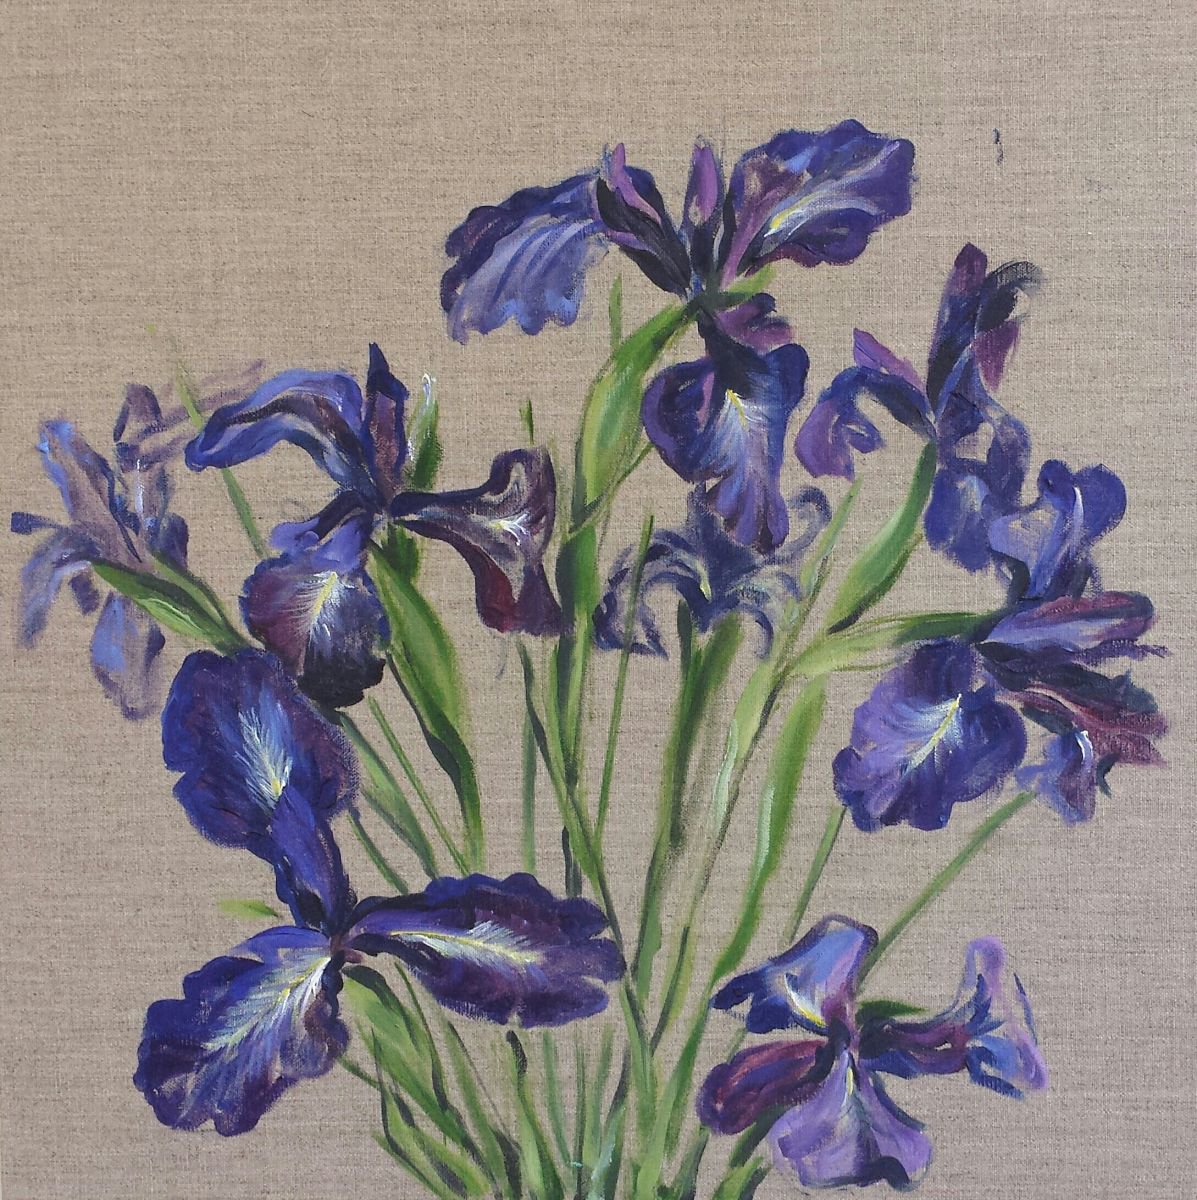 Irises by Margo de Jong